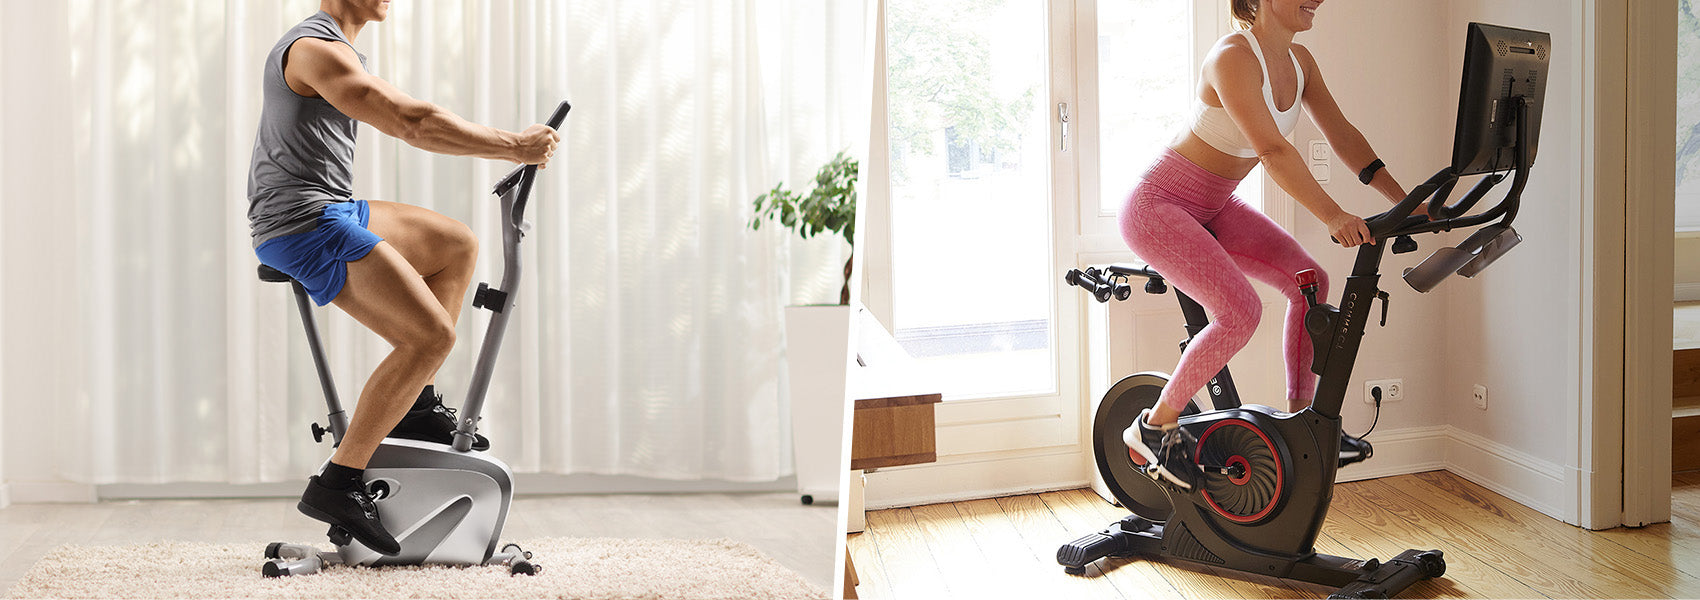 Les bienfaits du vélo d'appartement sur votre santé – Echelon Fit France